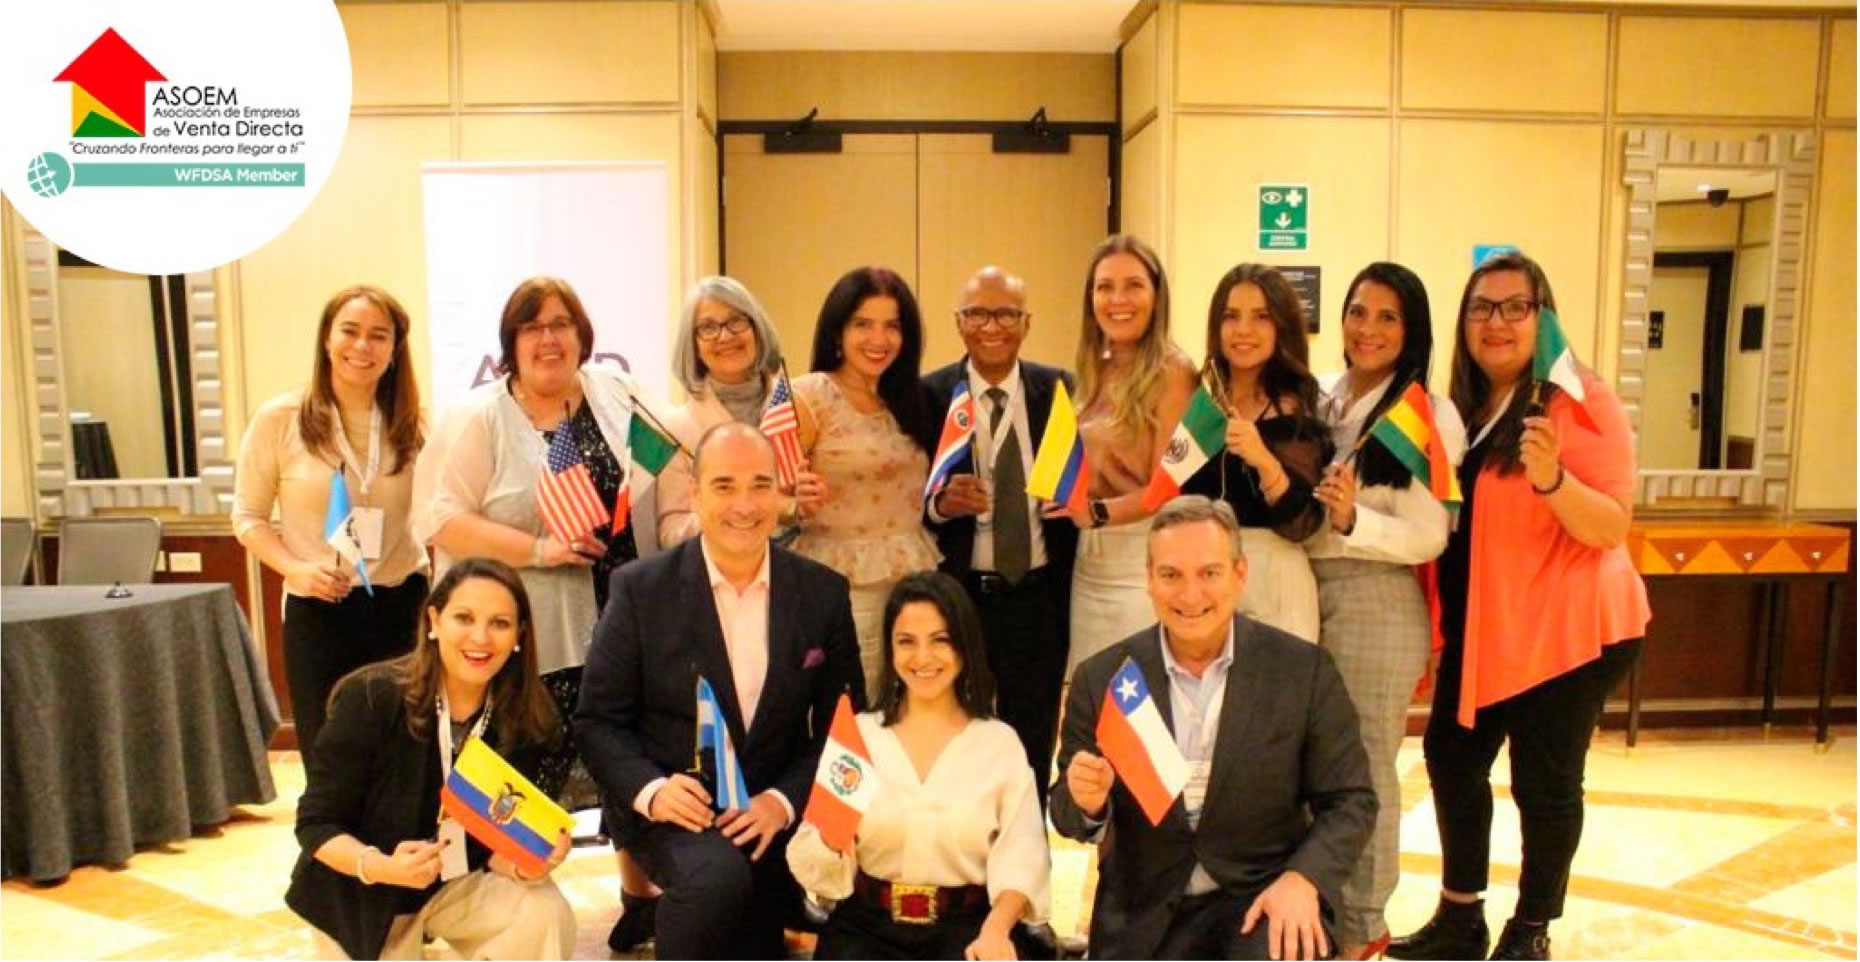 ASOEM, reunión latinoamericana de Asociaciones de venta directa